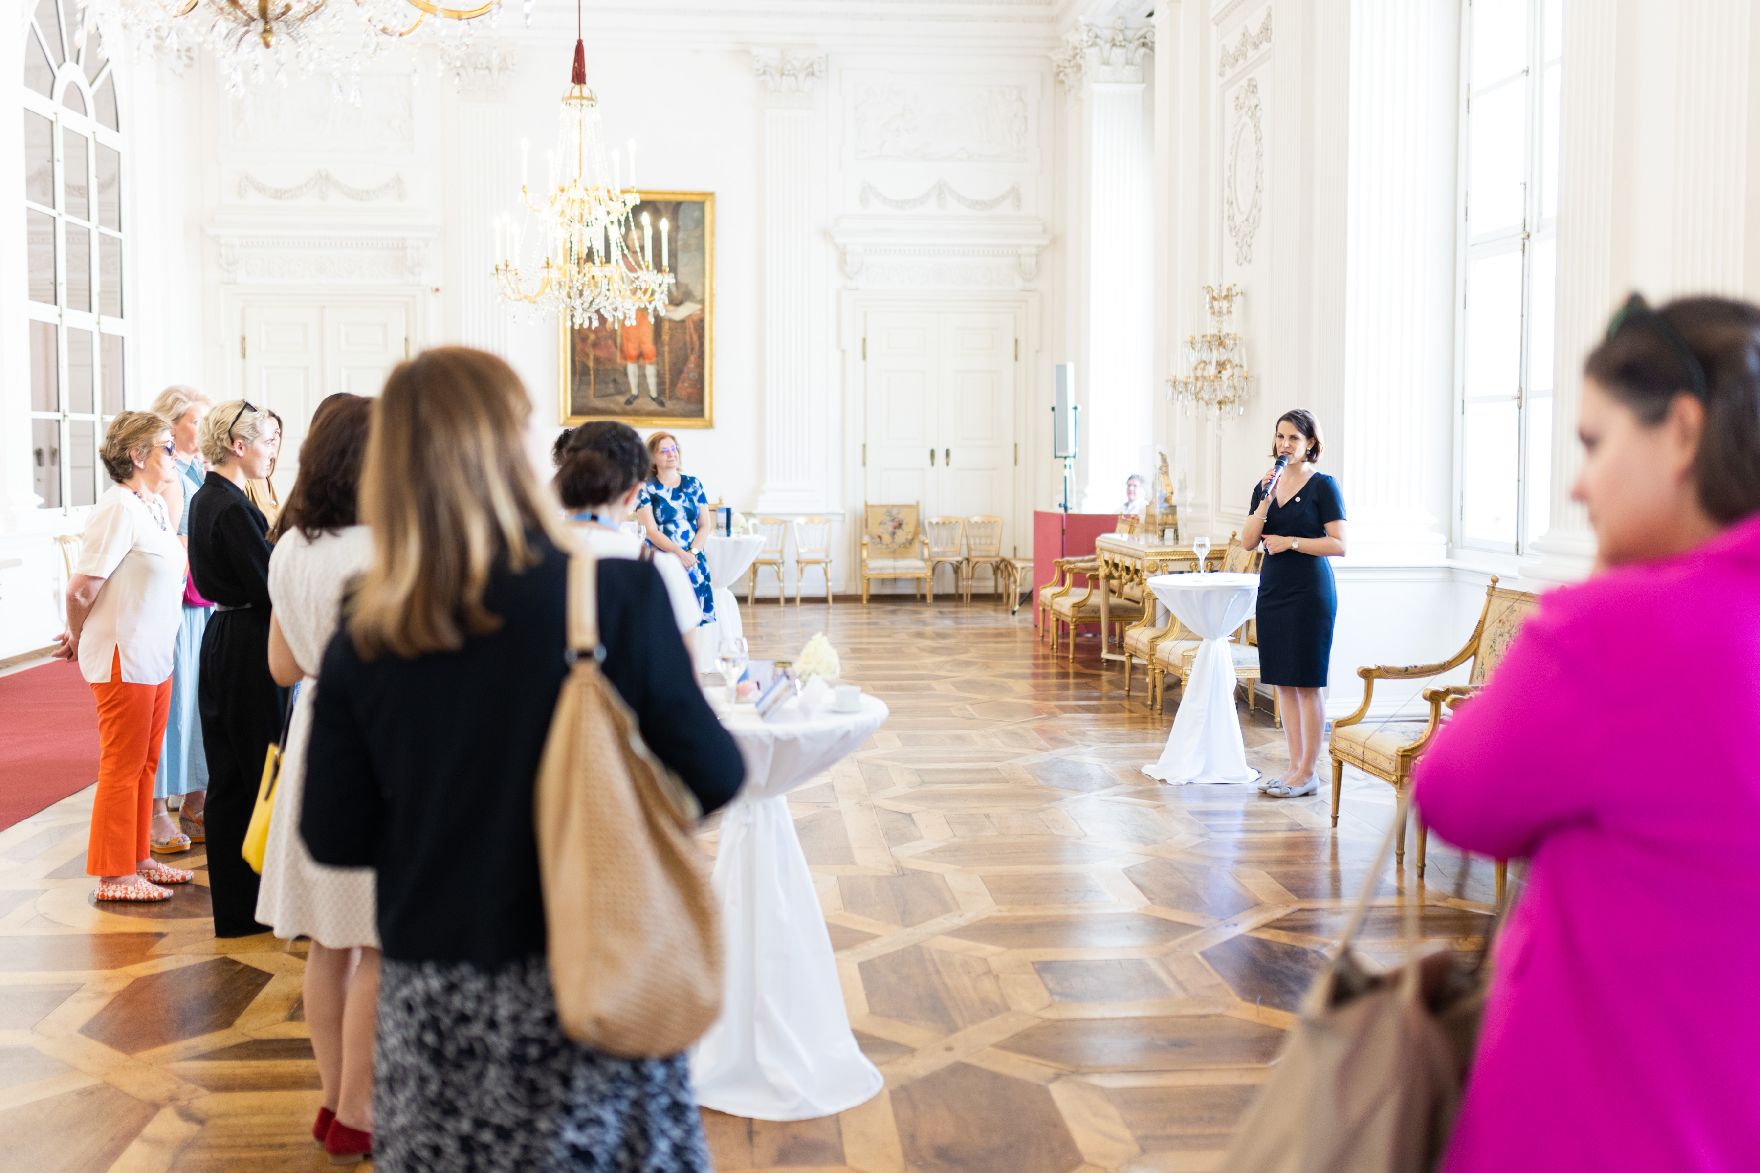 Am 4. August 2022 nahm Bundesministerin Karoline Edtstadler an der „The Next Generation is Female“ Konferenz in Salzburg teil. Im Bild beim informellen get-together.